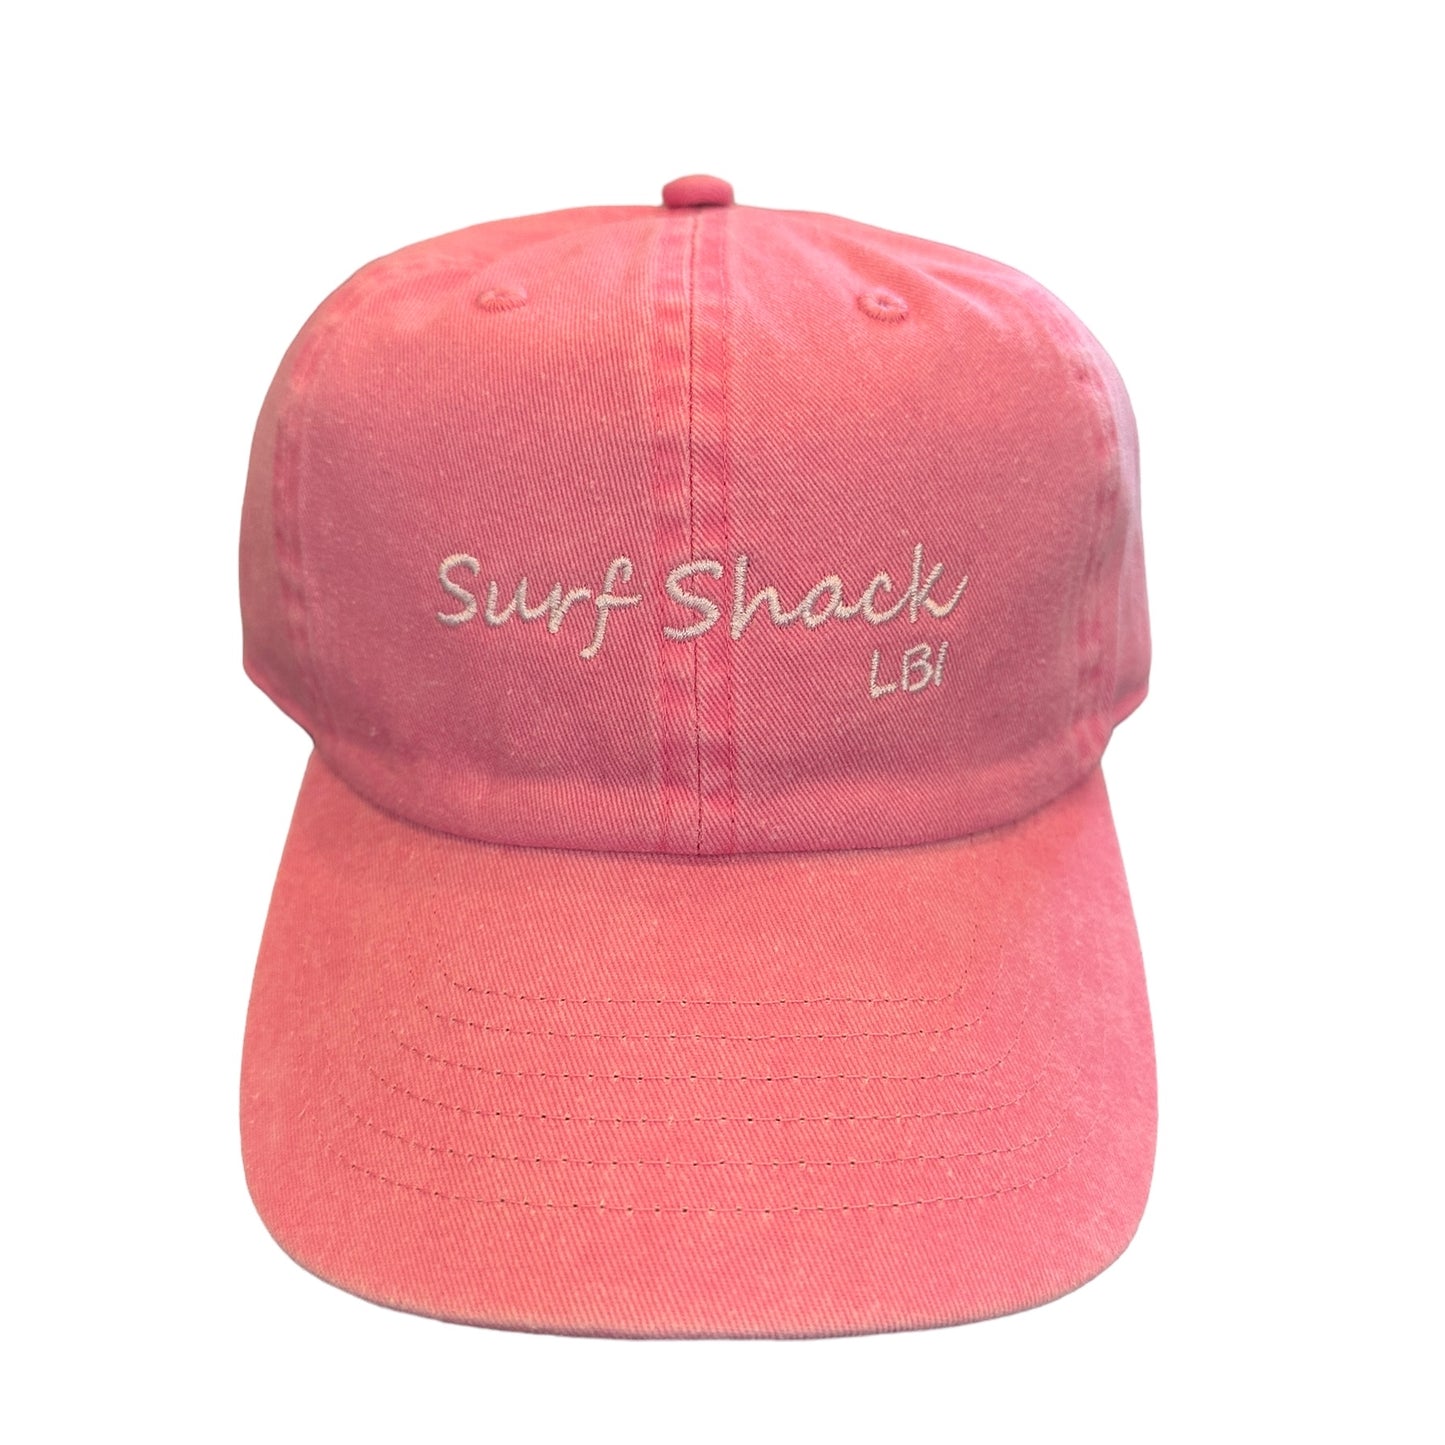 Surf Shack LBI Pink Hat